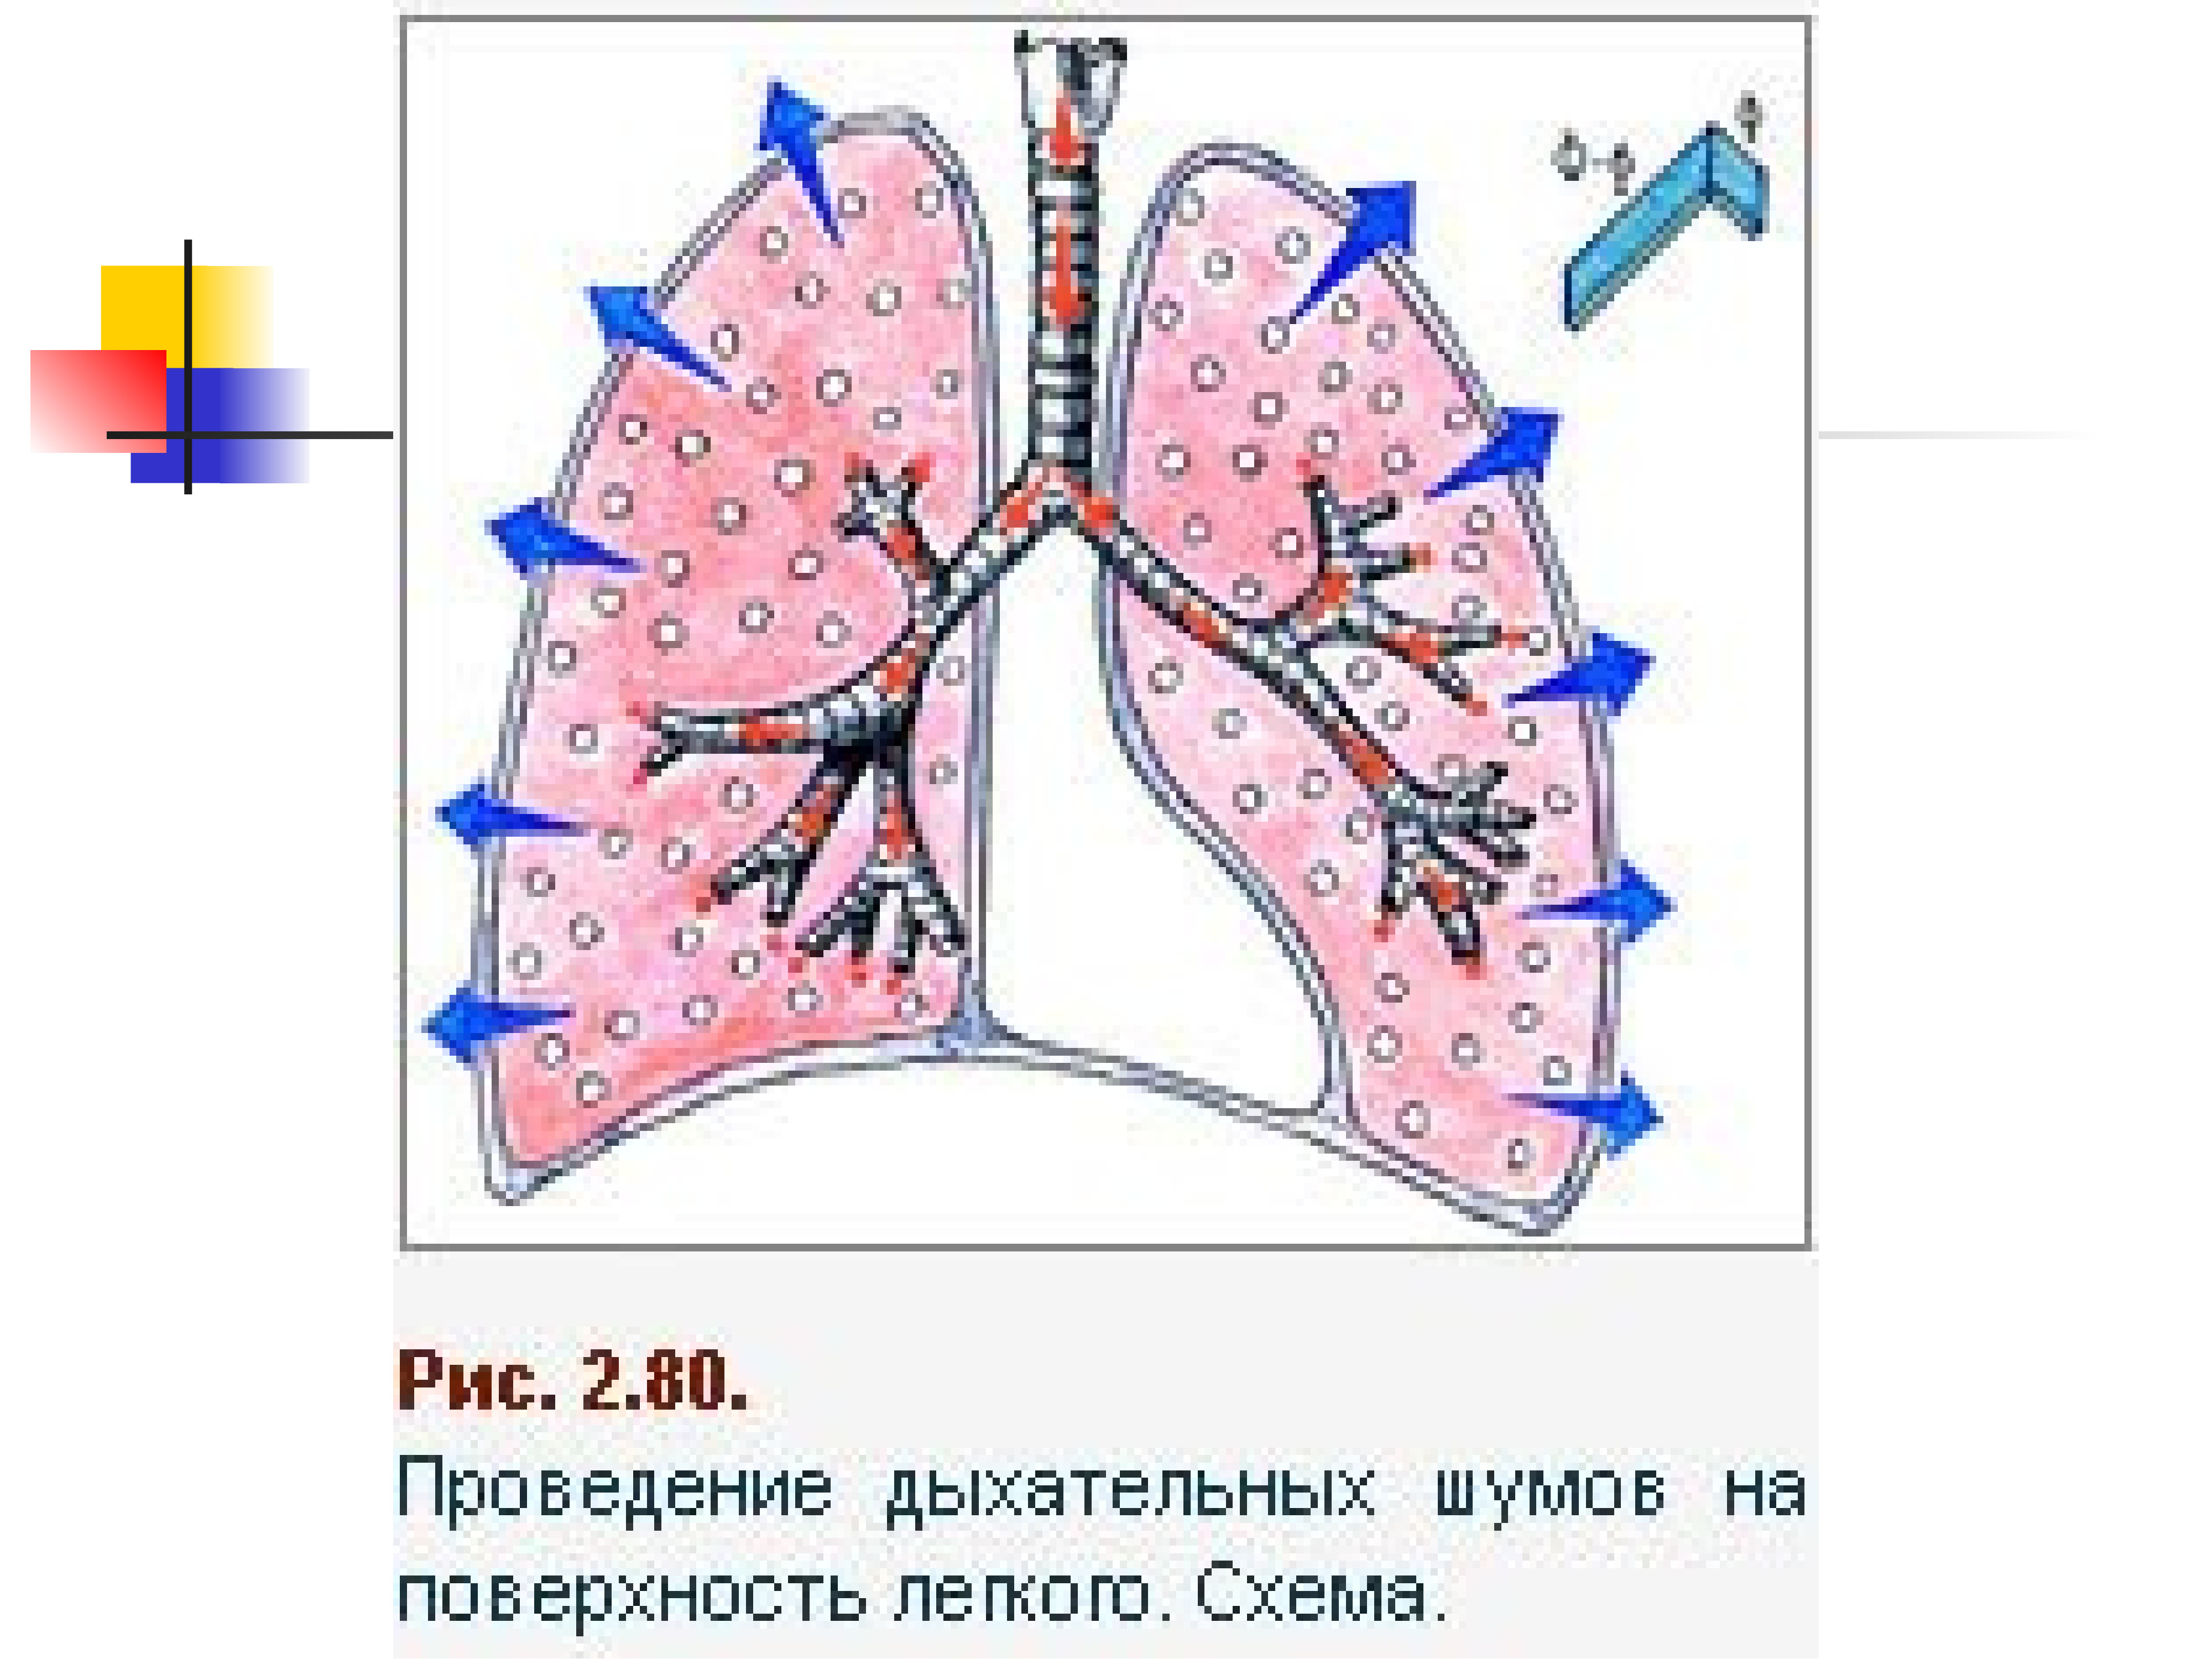 Поверхность легких образована. Исследование дыхательной системы. Методы исследования дыхательной системы. Поверхности легкого схема. Бронхиальное дыхание.